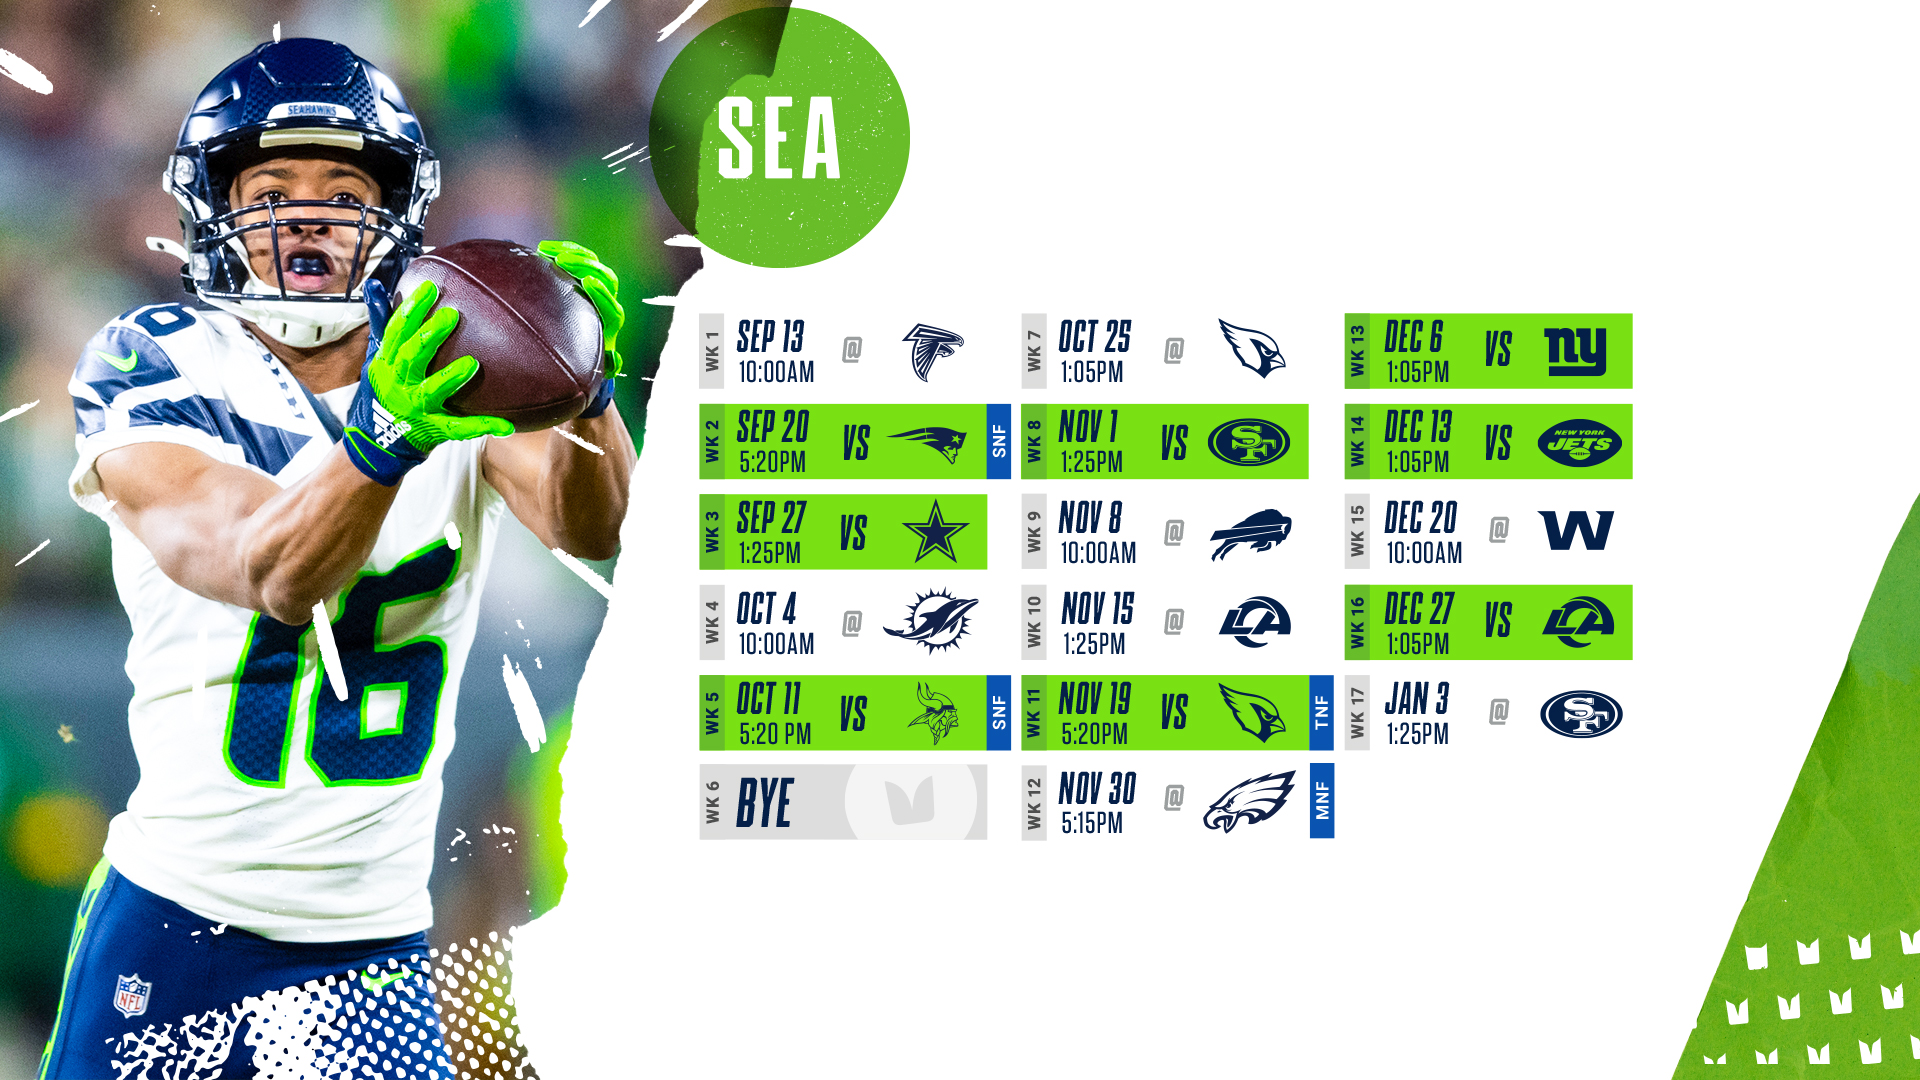 seattle seahawks uniform schedule 2019